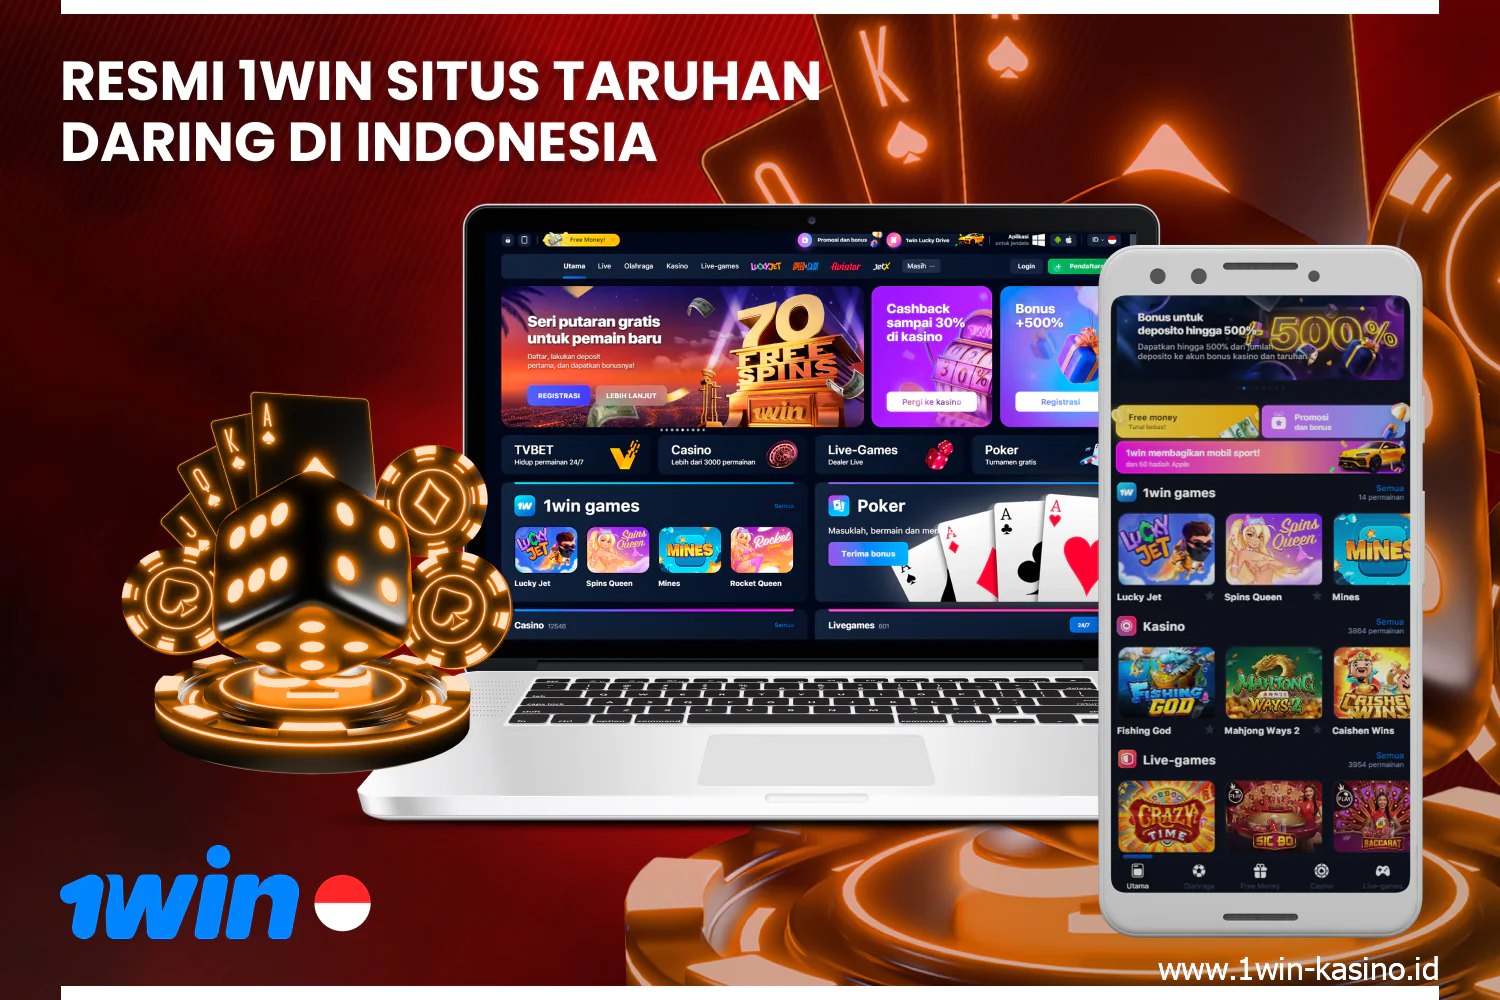 Kasino 1win di Indonesia menawarkan taruhan olahraga online dan ratusan aktivitas perjudian kepada para penggunanya